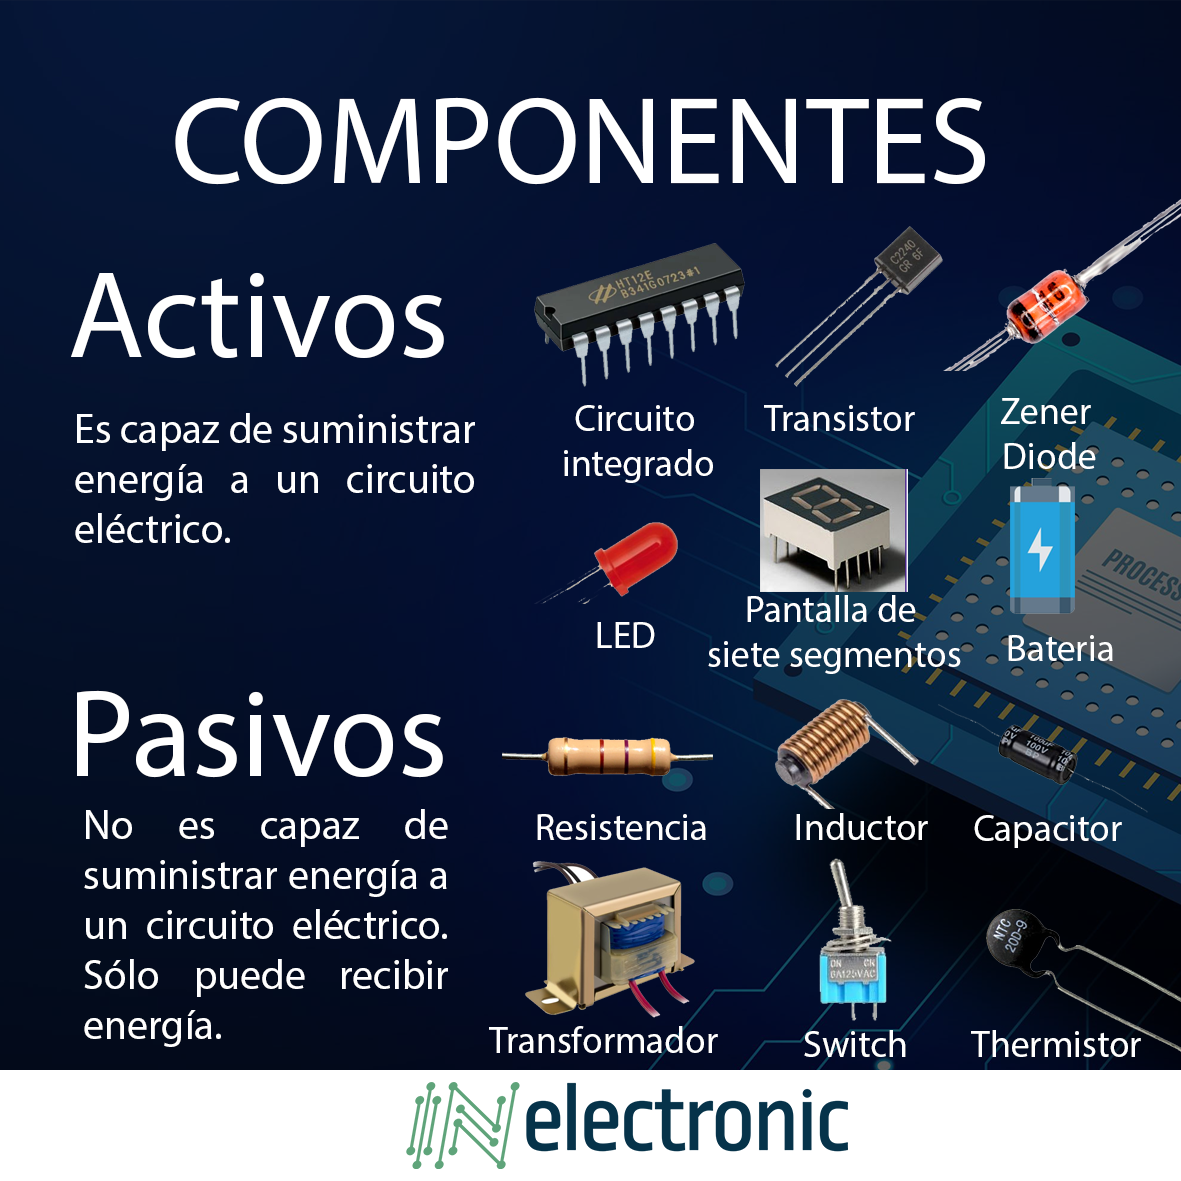 Electrotec - Estos son los componentes electrónicos Activos y